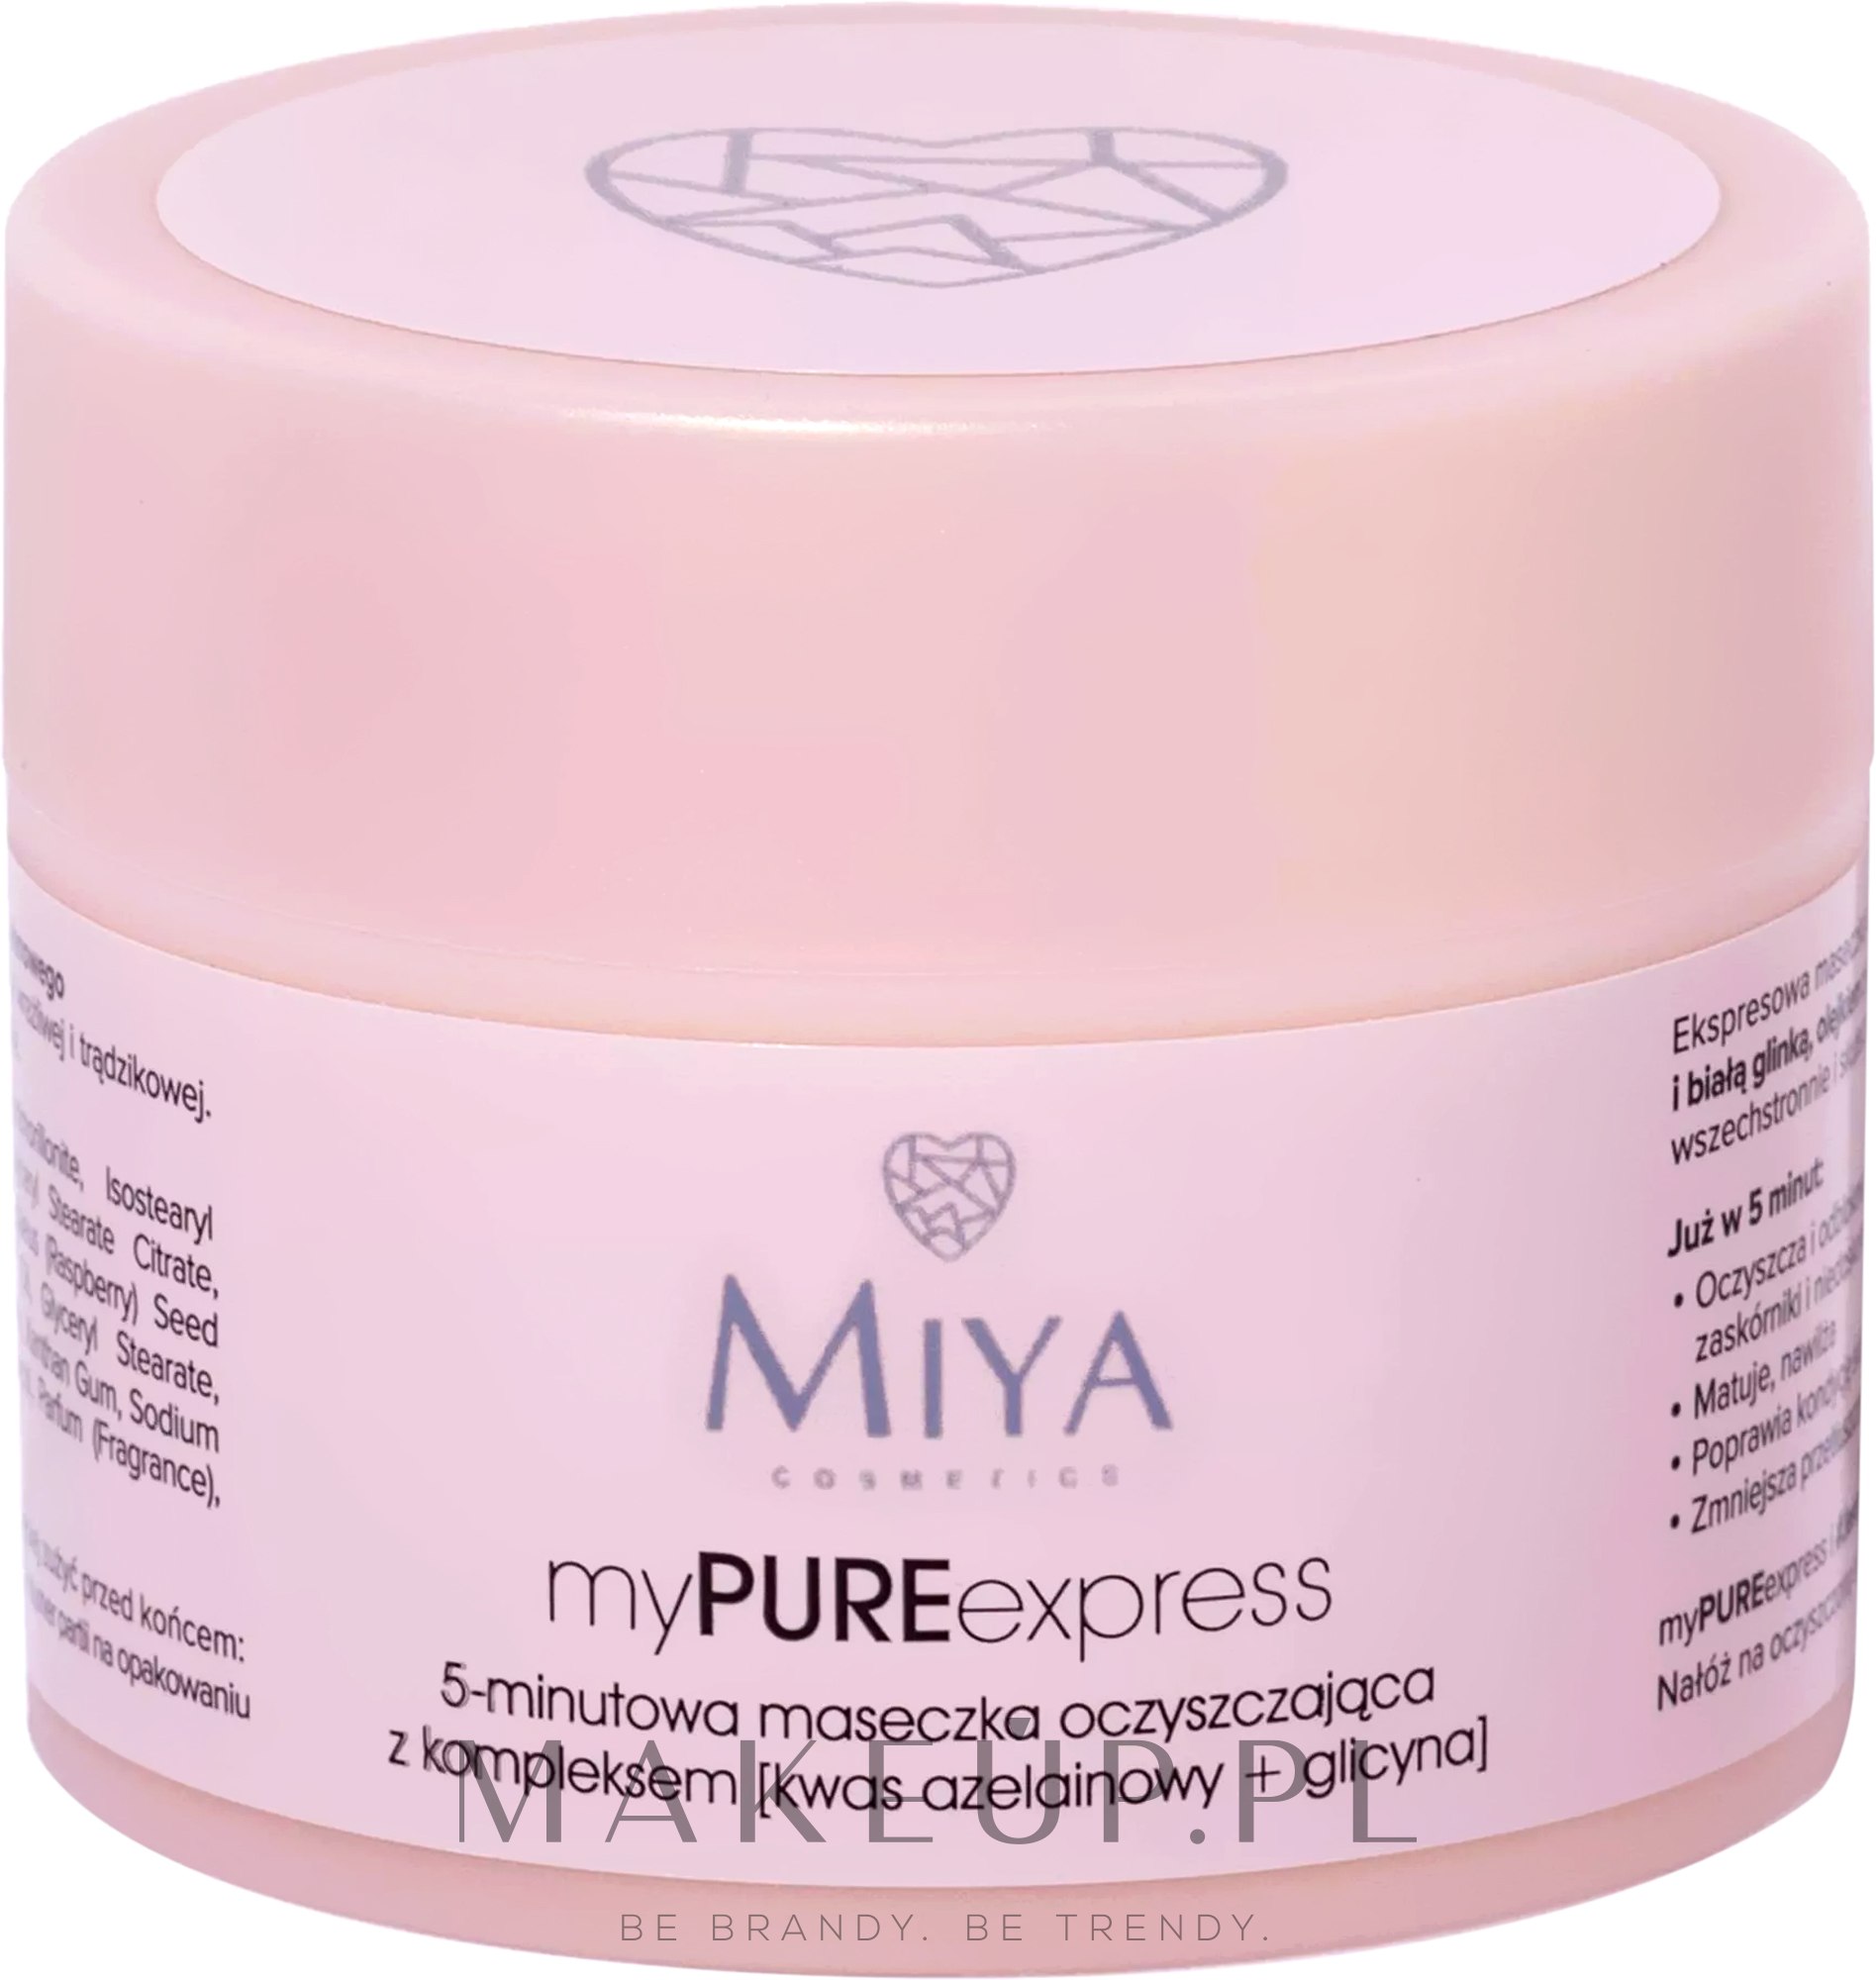 Miya Cosmetics myPUREexpress - 5-minutowa maseczka oczyszczająca z kompleksem [kwas azelainowy + glicyna] — Zdjęcie 50 g